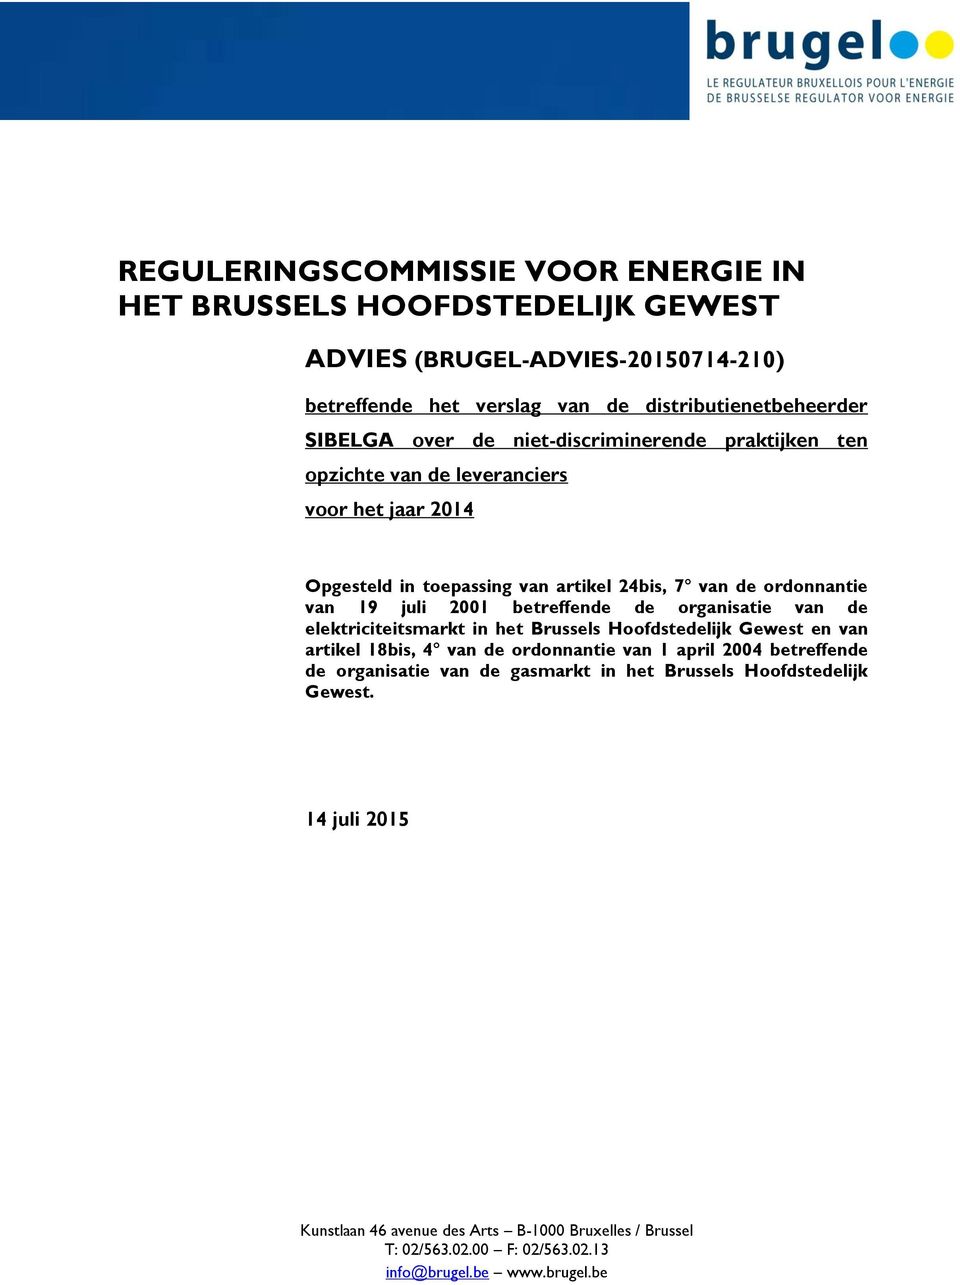 betreffende de organisatie van de elektriciteitsmarkt in het Brussels Hoofdstedelijk Gewest en van artikel 18bis, 4 van de ordonnantie van 1 april 2004 betreffende de